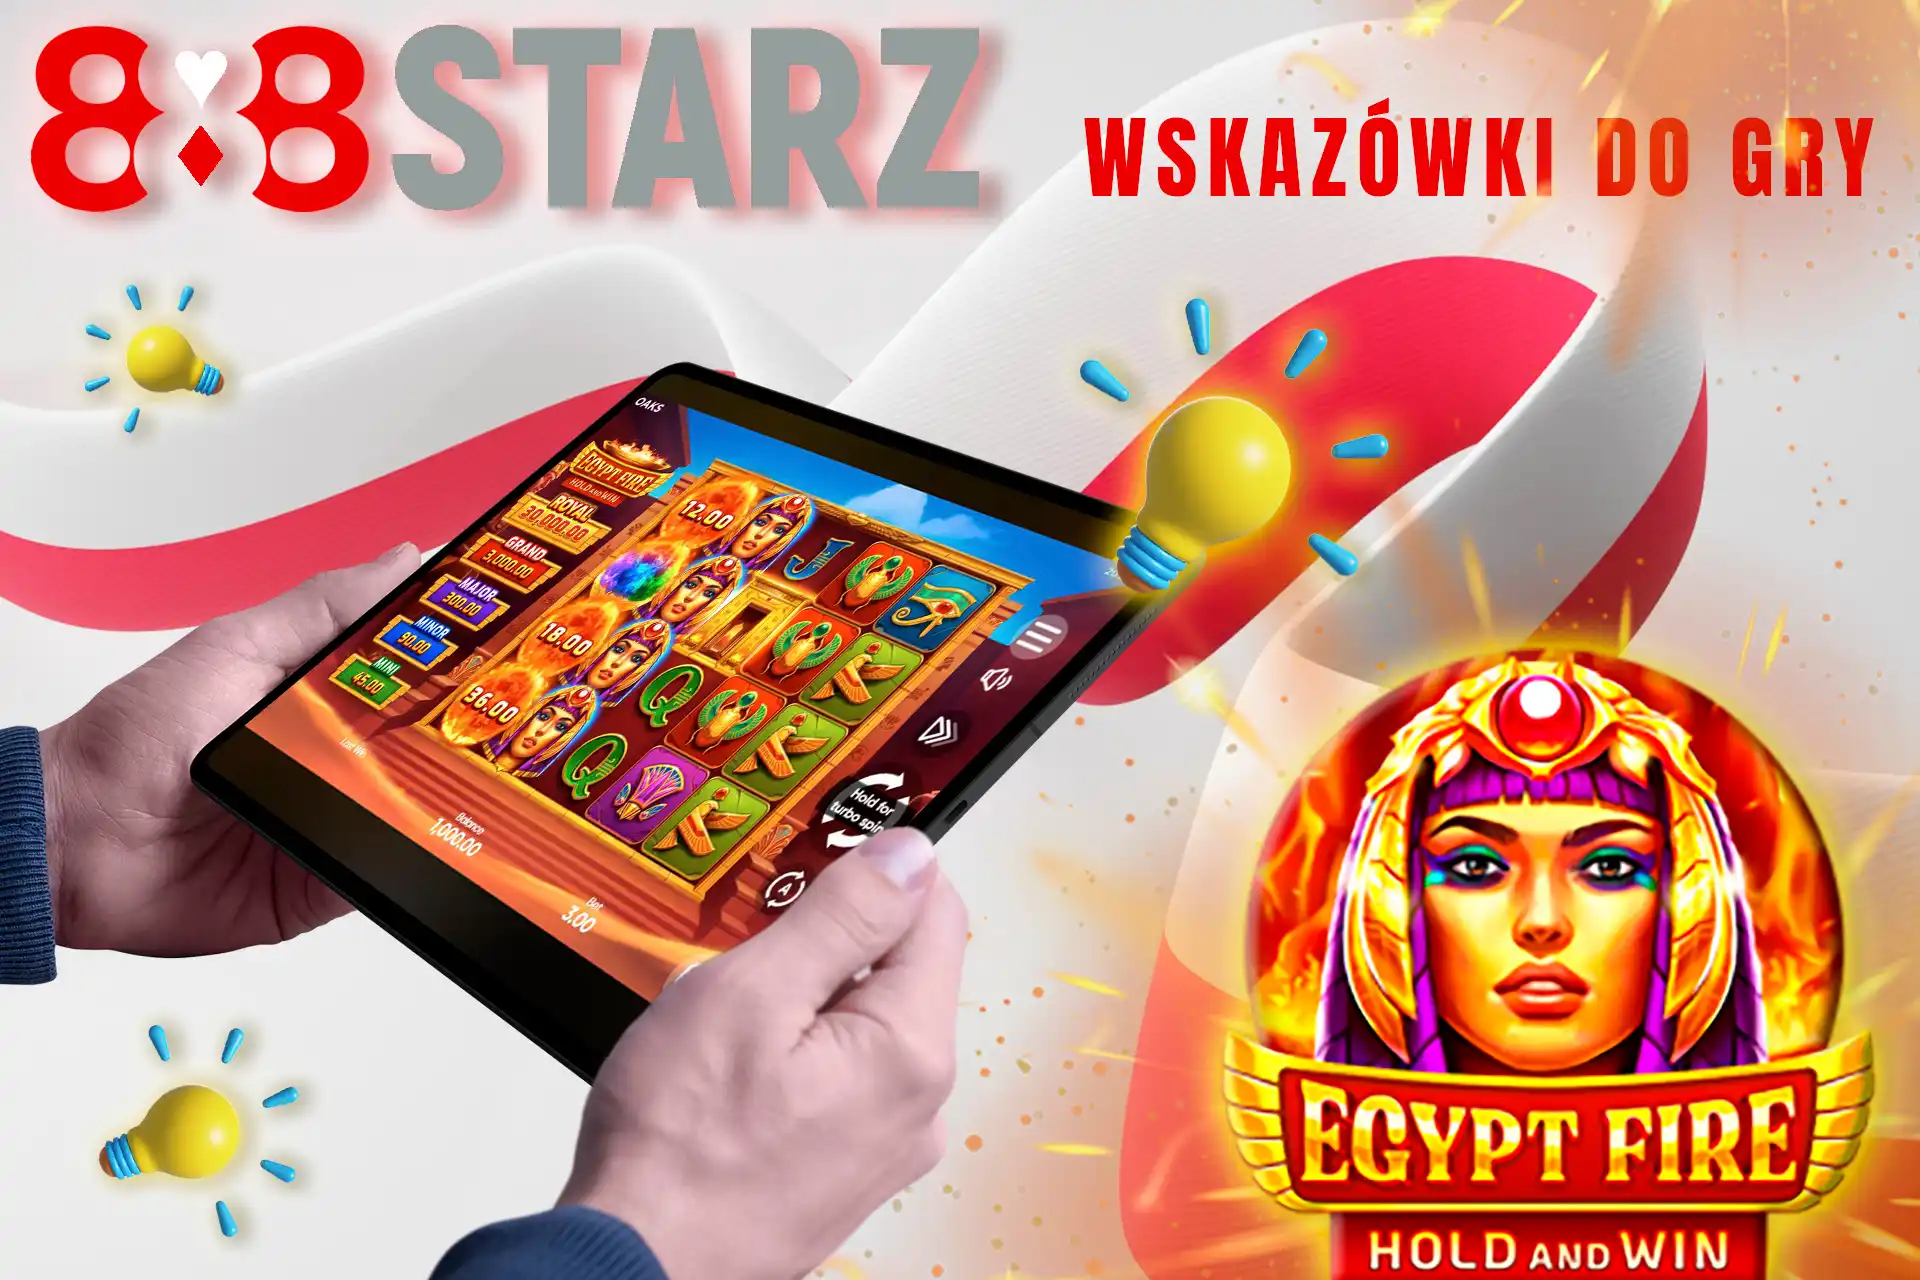 Wskazówki dotyczące gry w Egypt Fire: Hold and Win na 888starz